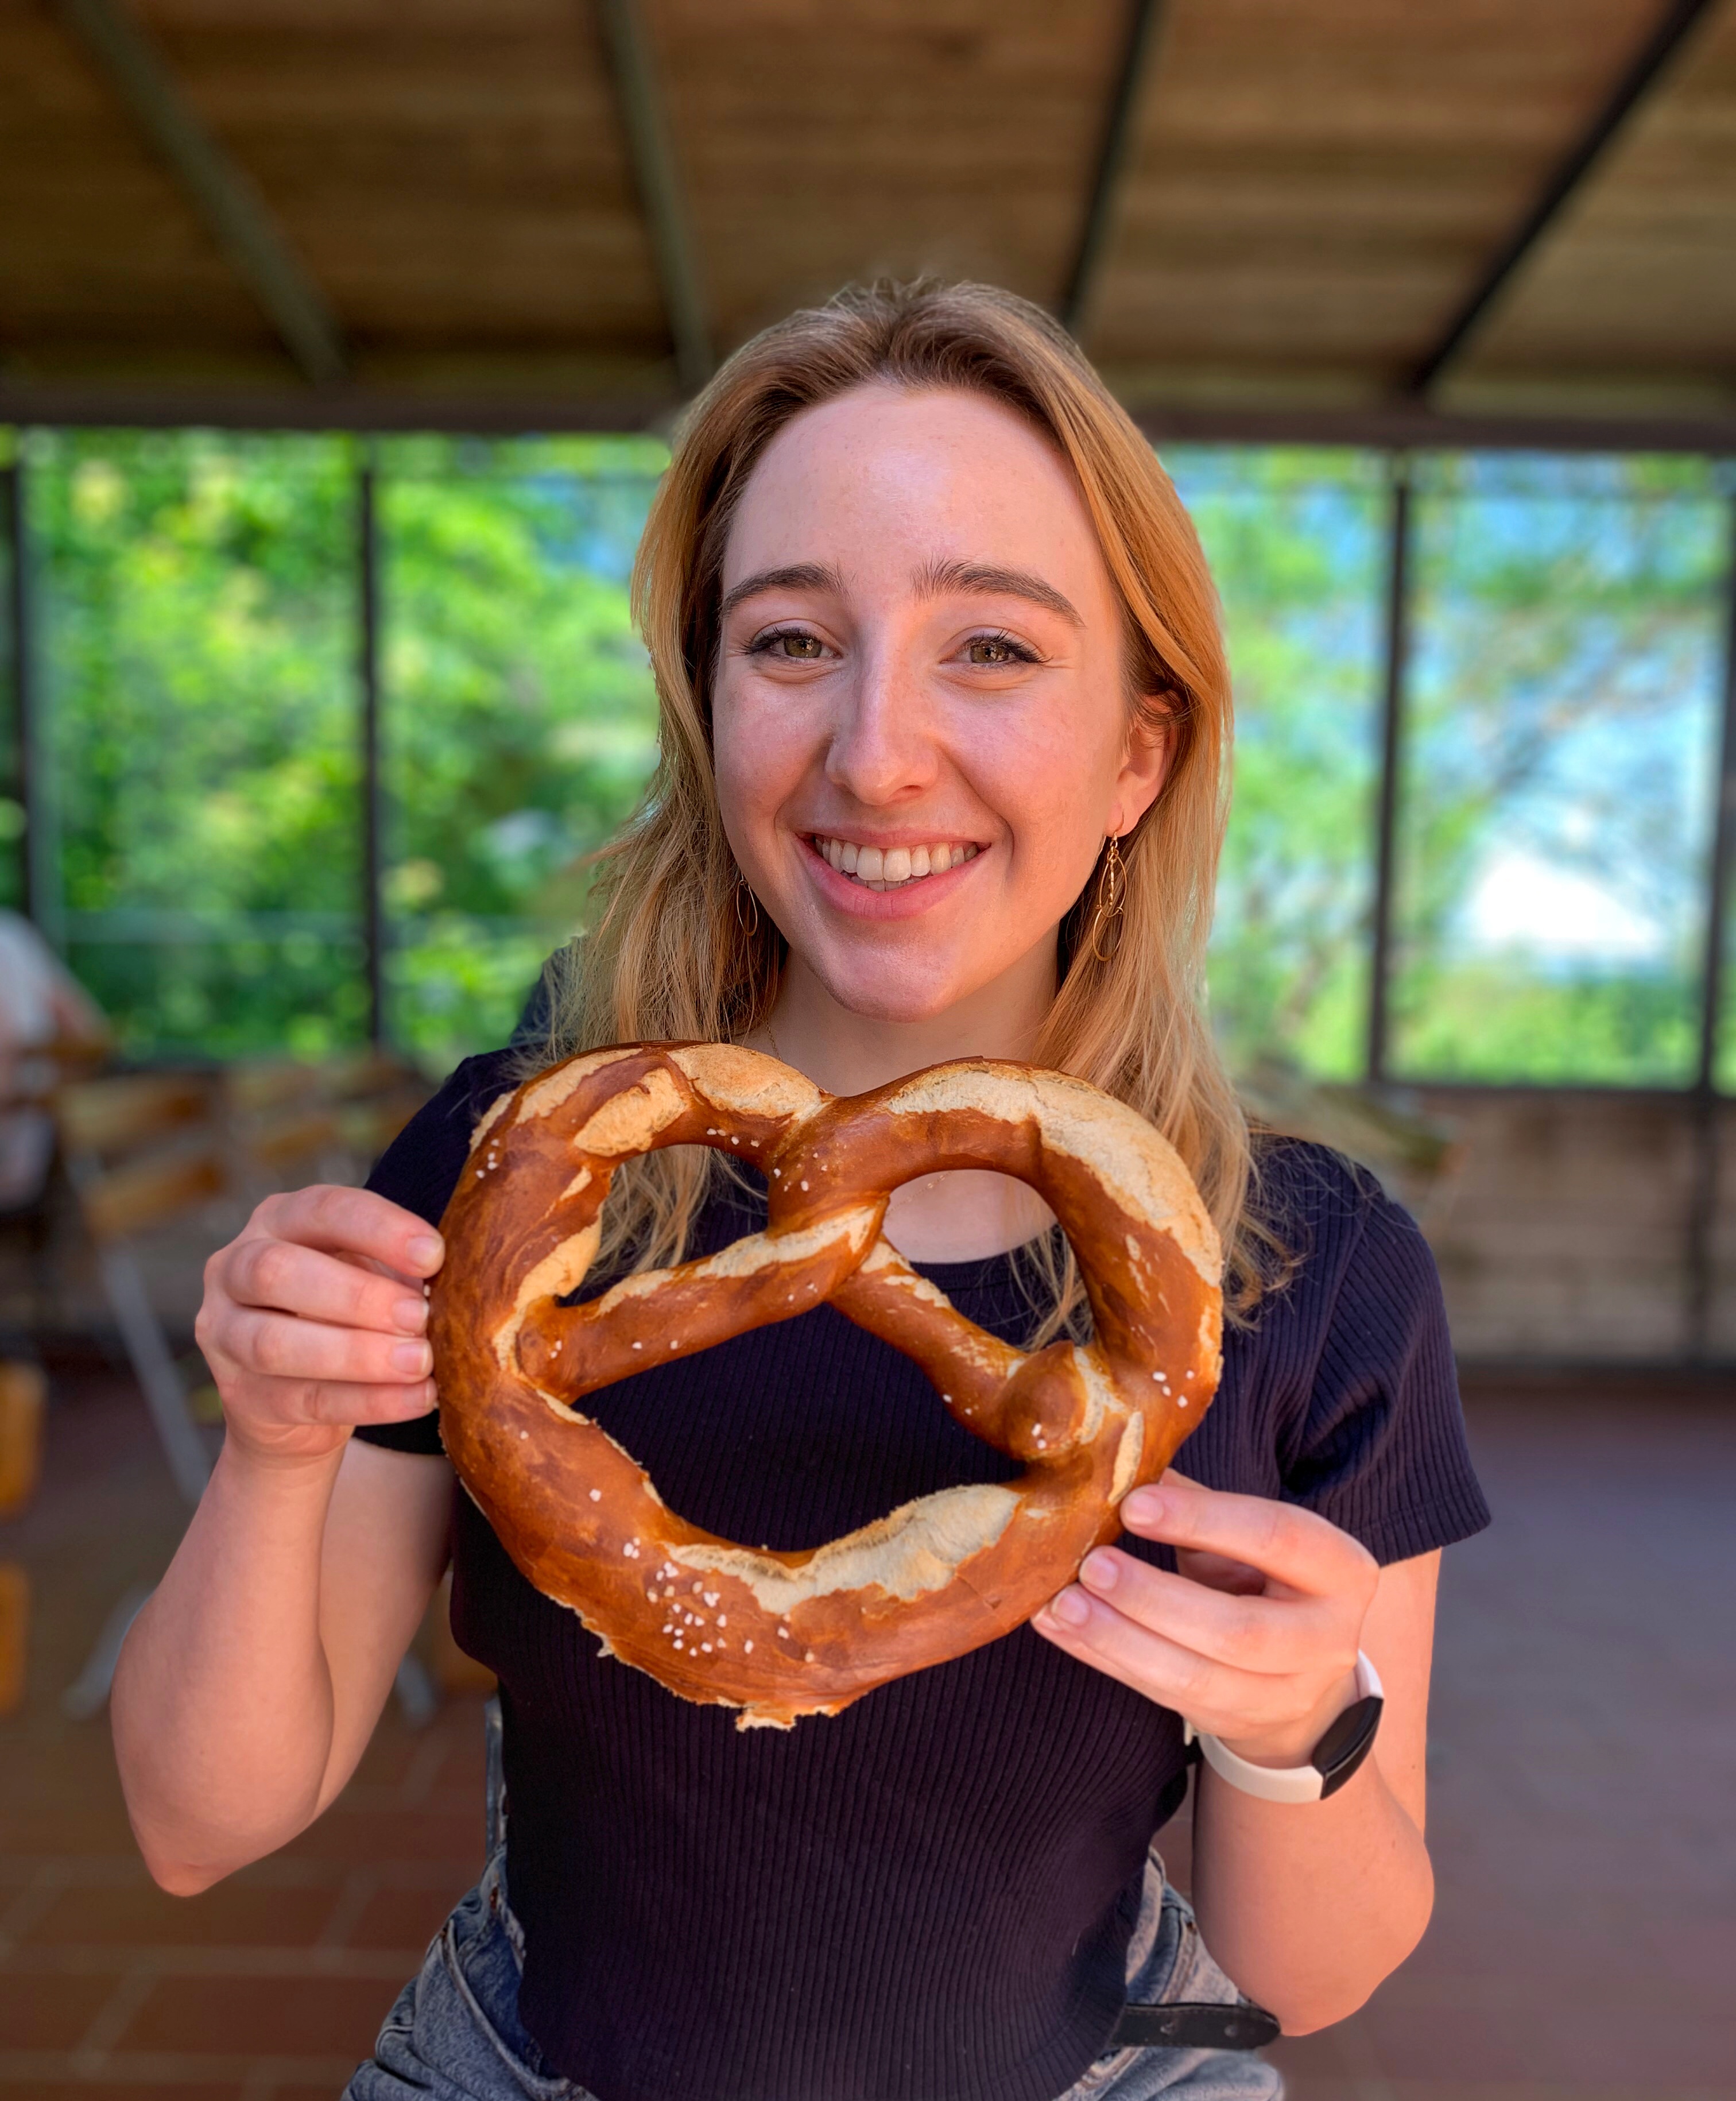 German student holds large pretzel